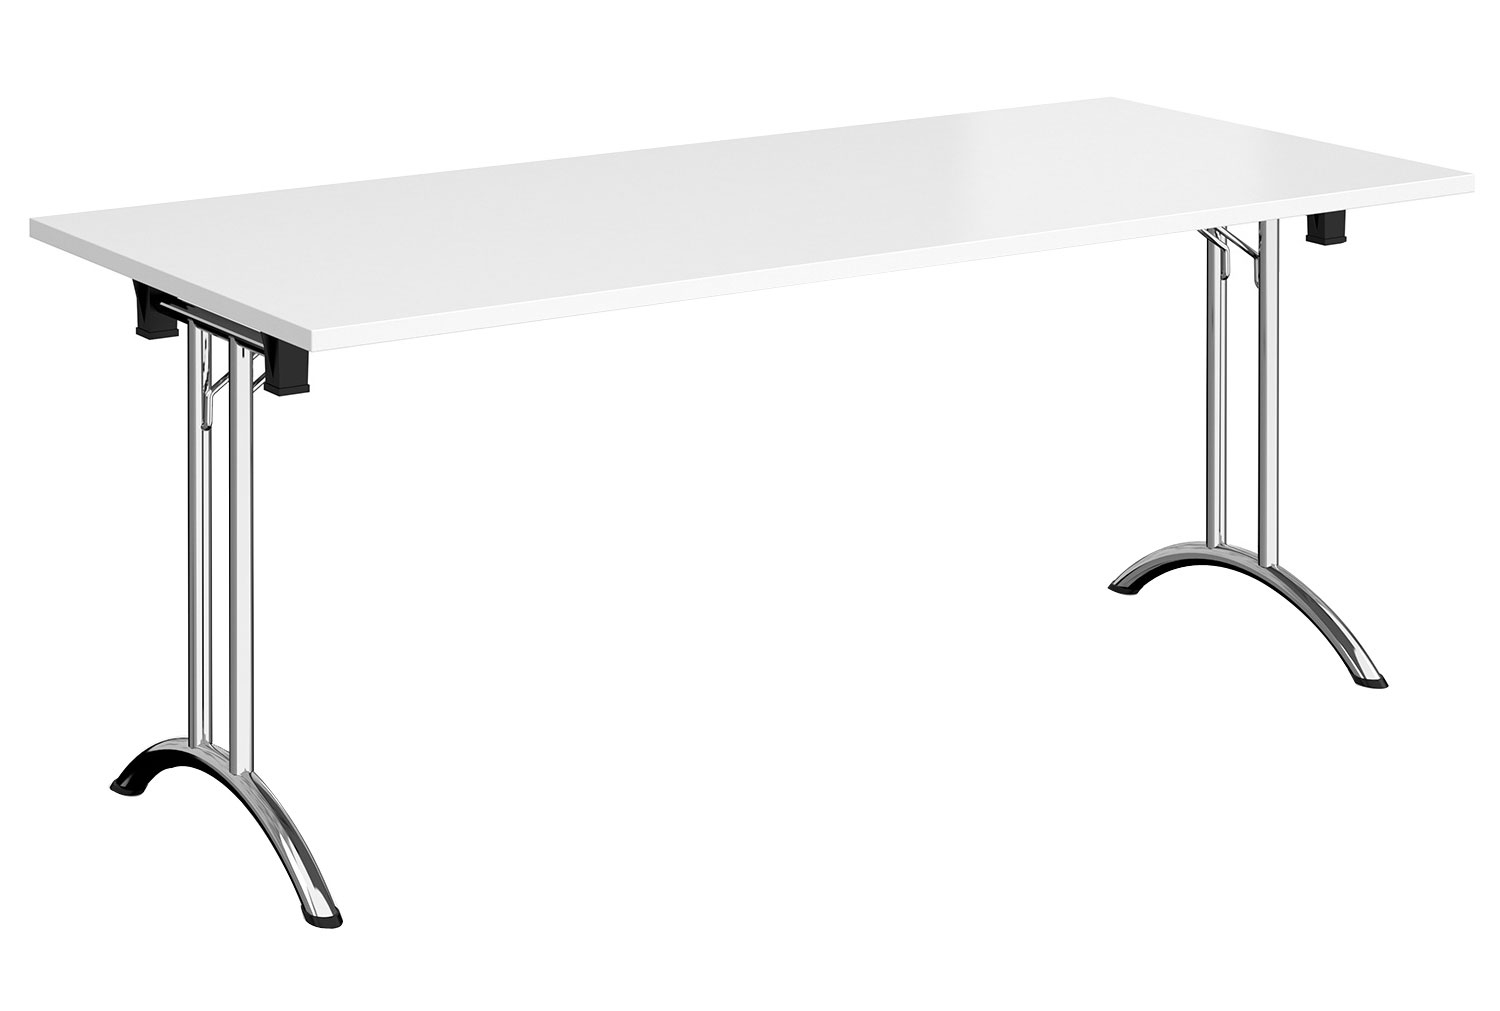 Zeeland Rectangular Folding Table, 180wx80dx73h (cm), Chrome Frame, White